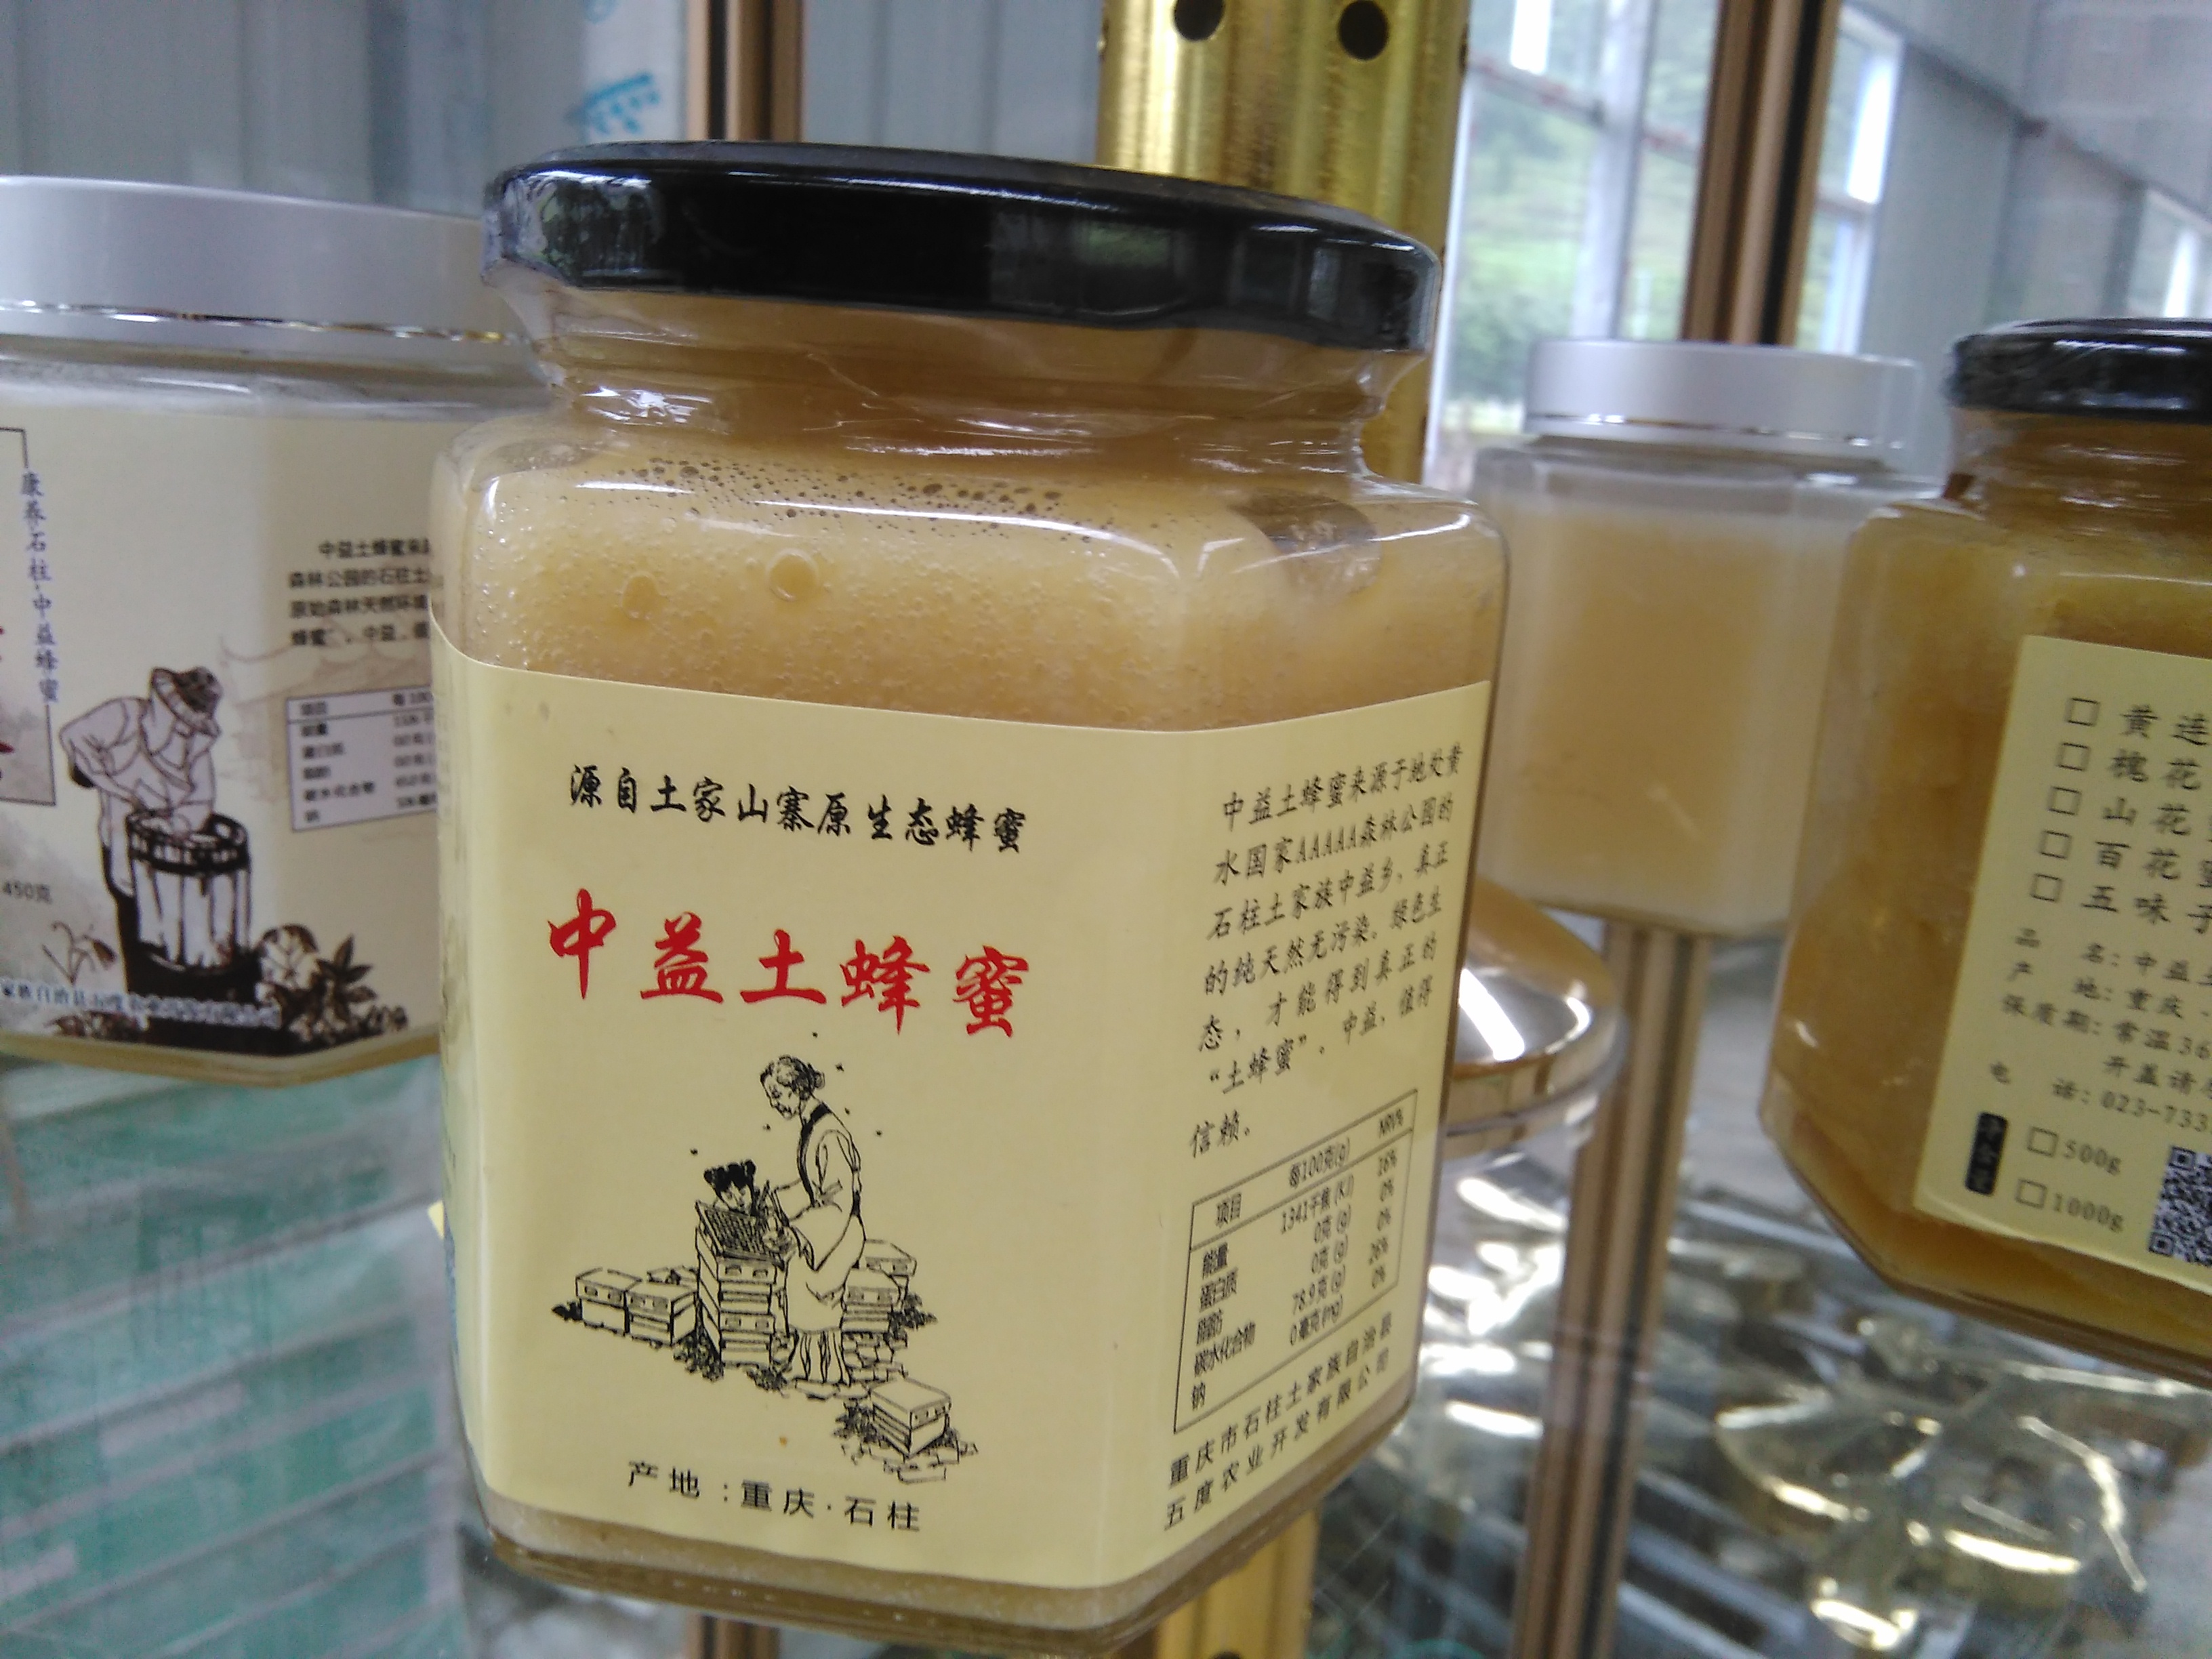 优质土蜂蜜 土蜂蜜产自 重庆 石柱县 中益乡